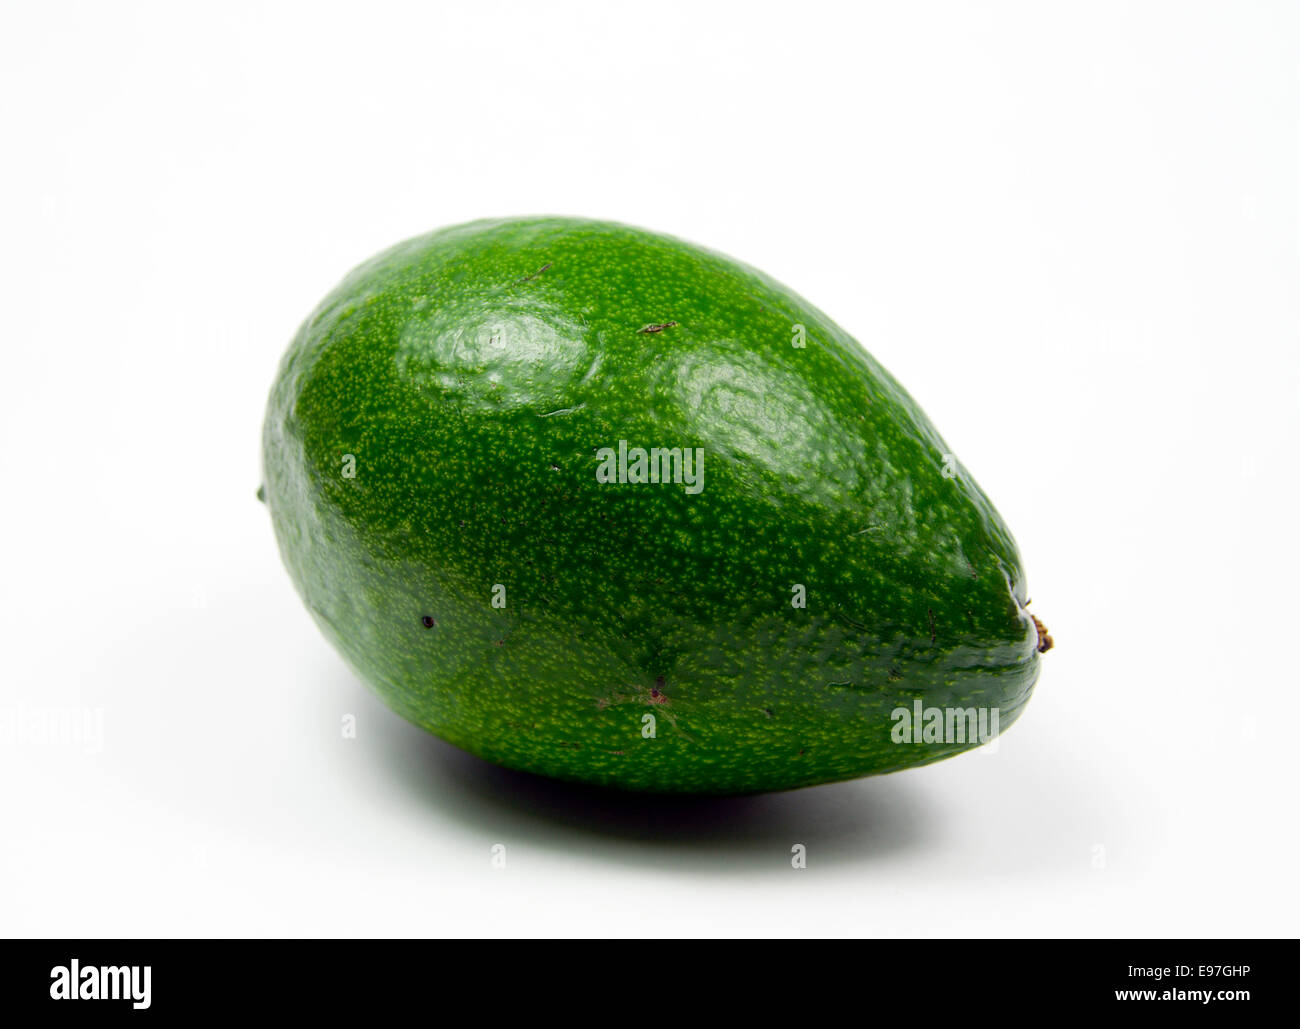 Avocado Pear. Stock Photo